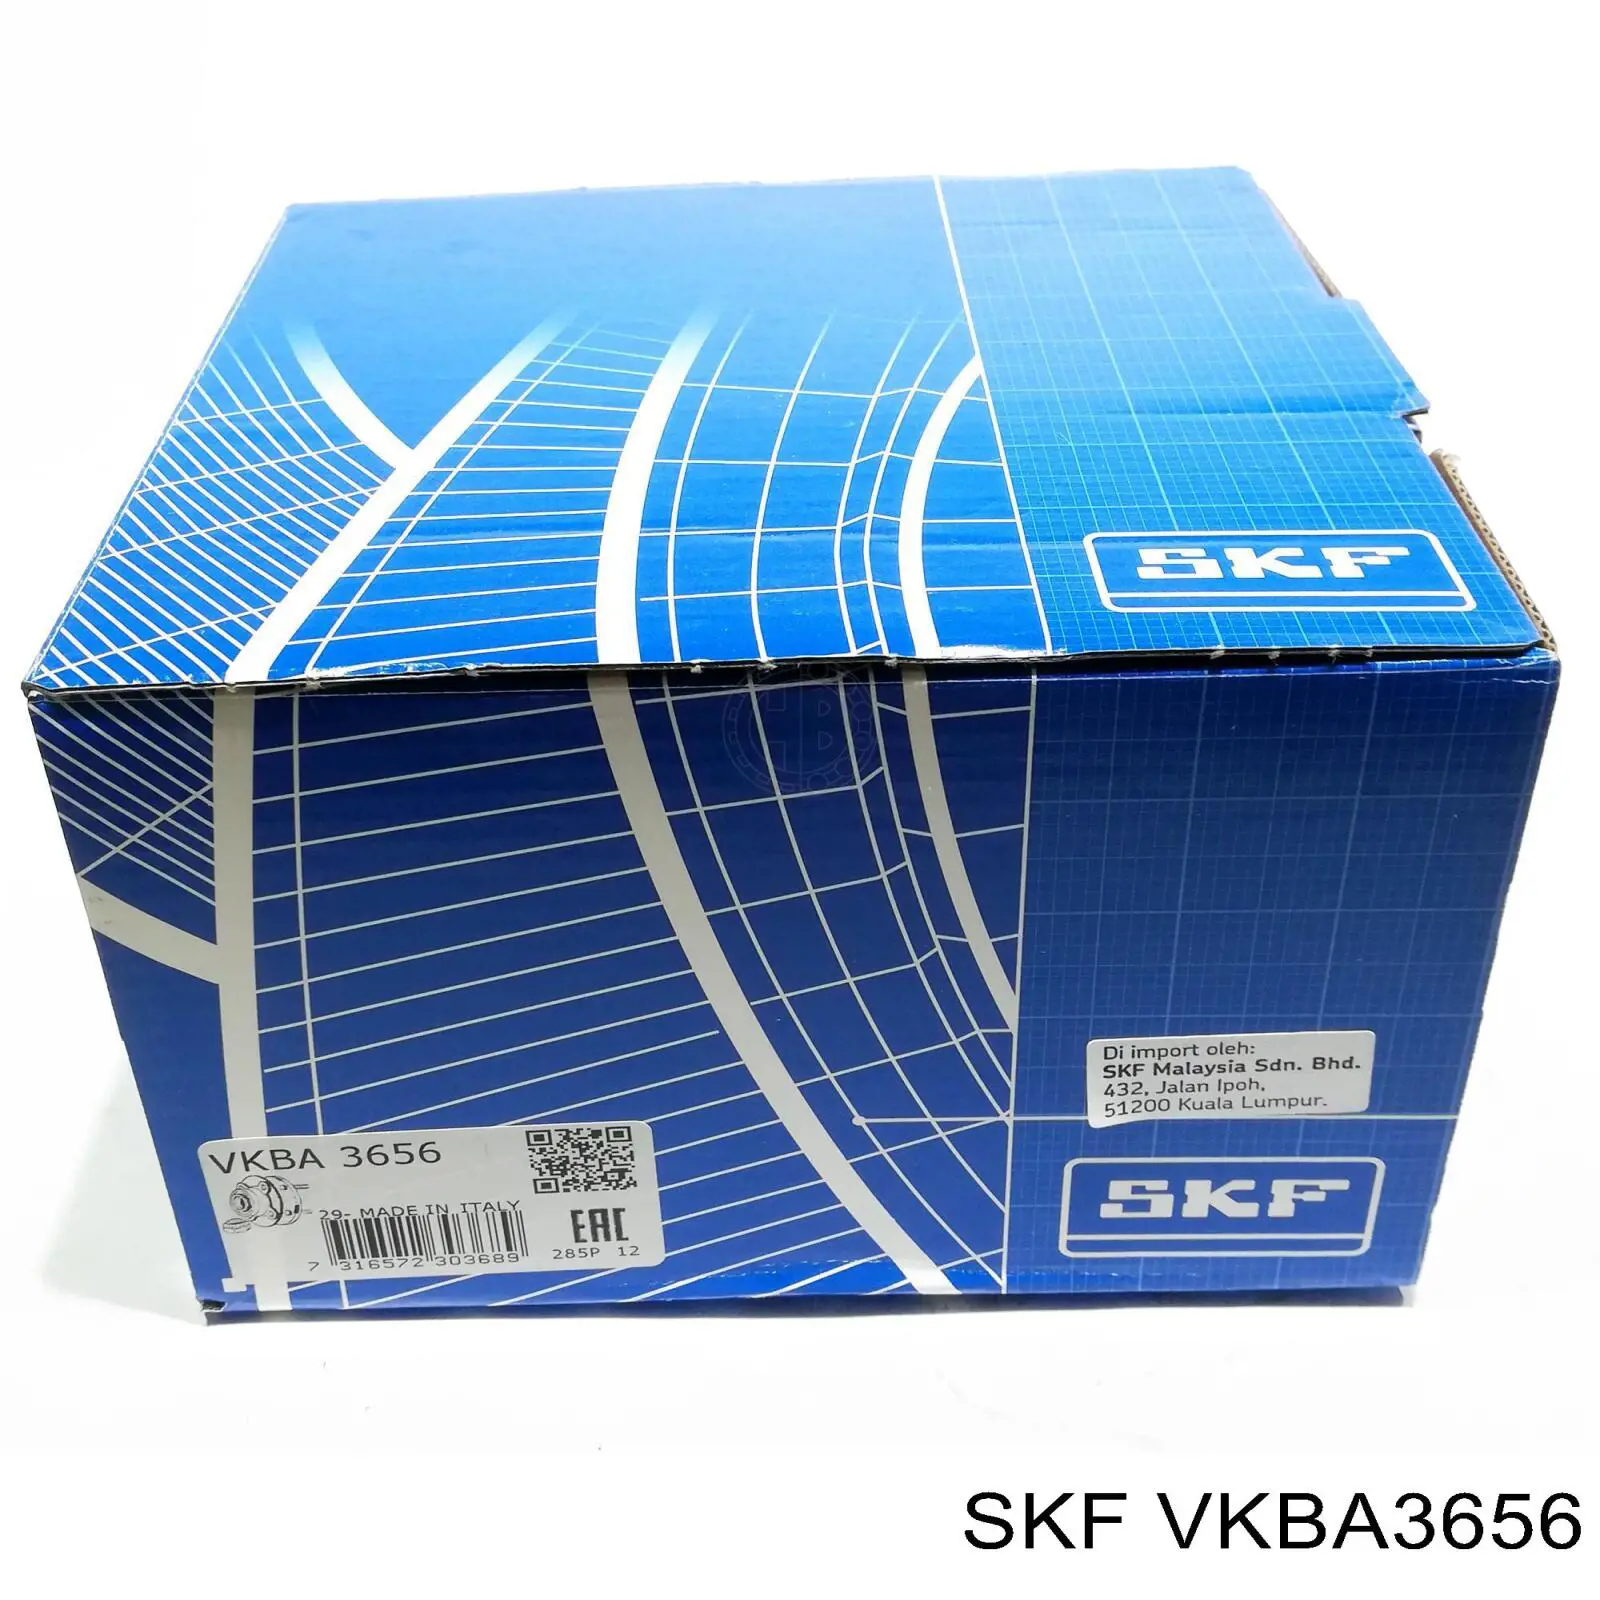 VKBA 3656 SKF cubo de rueda trasero